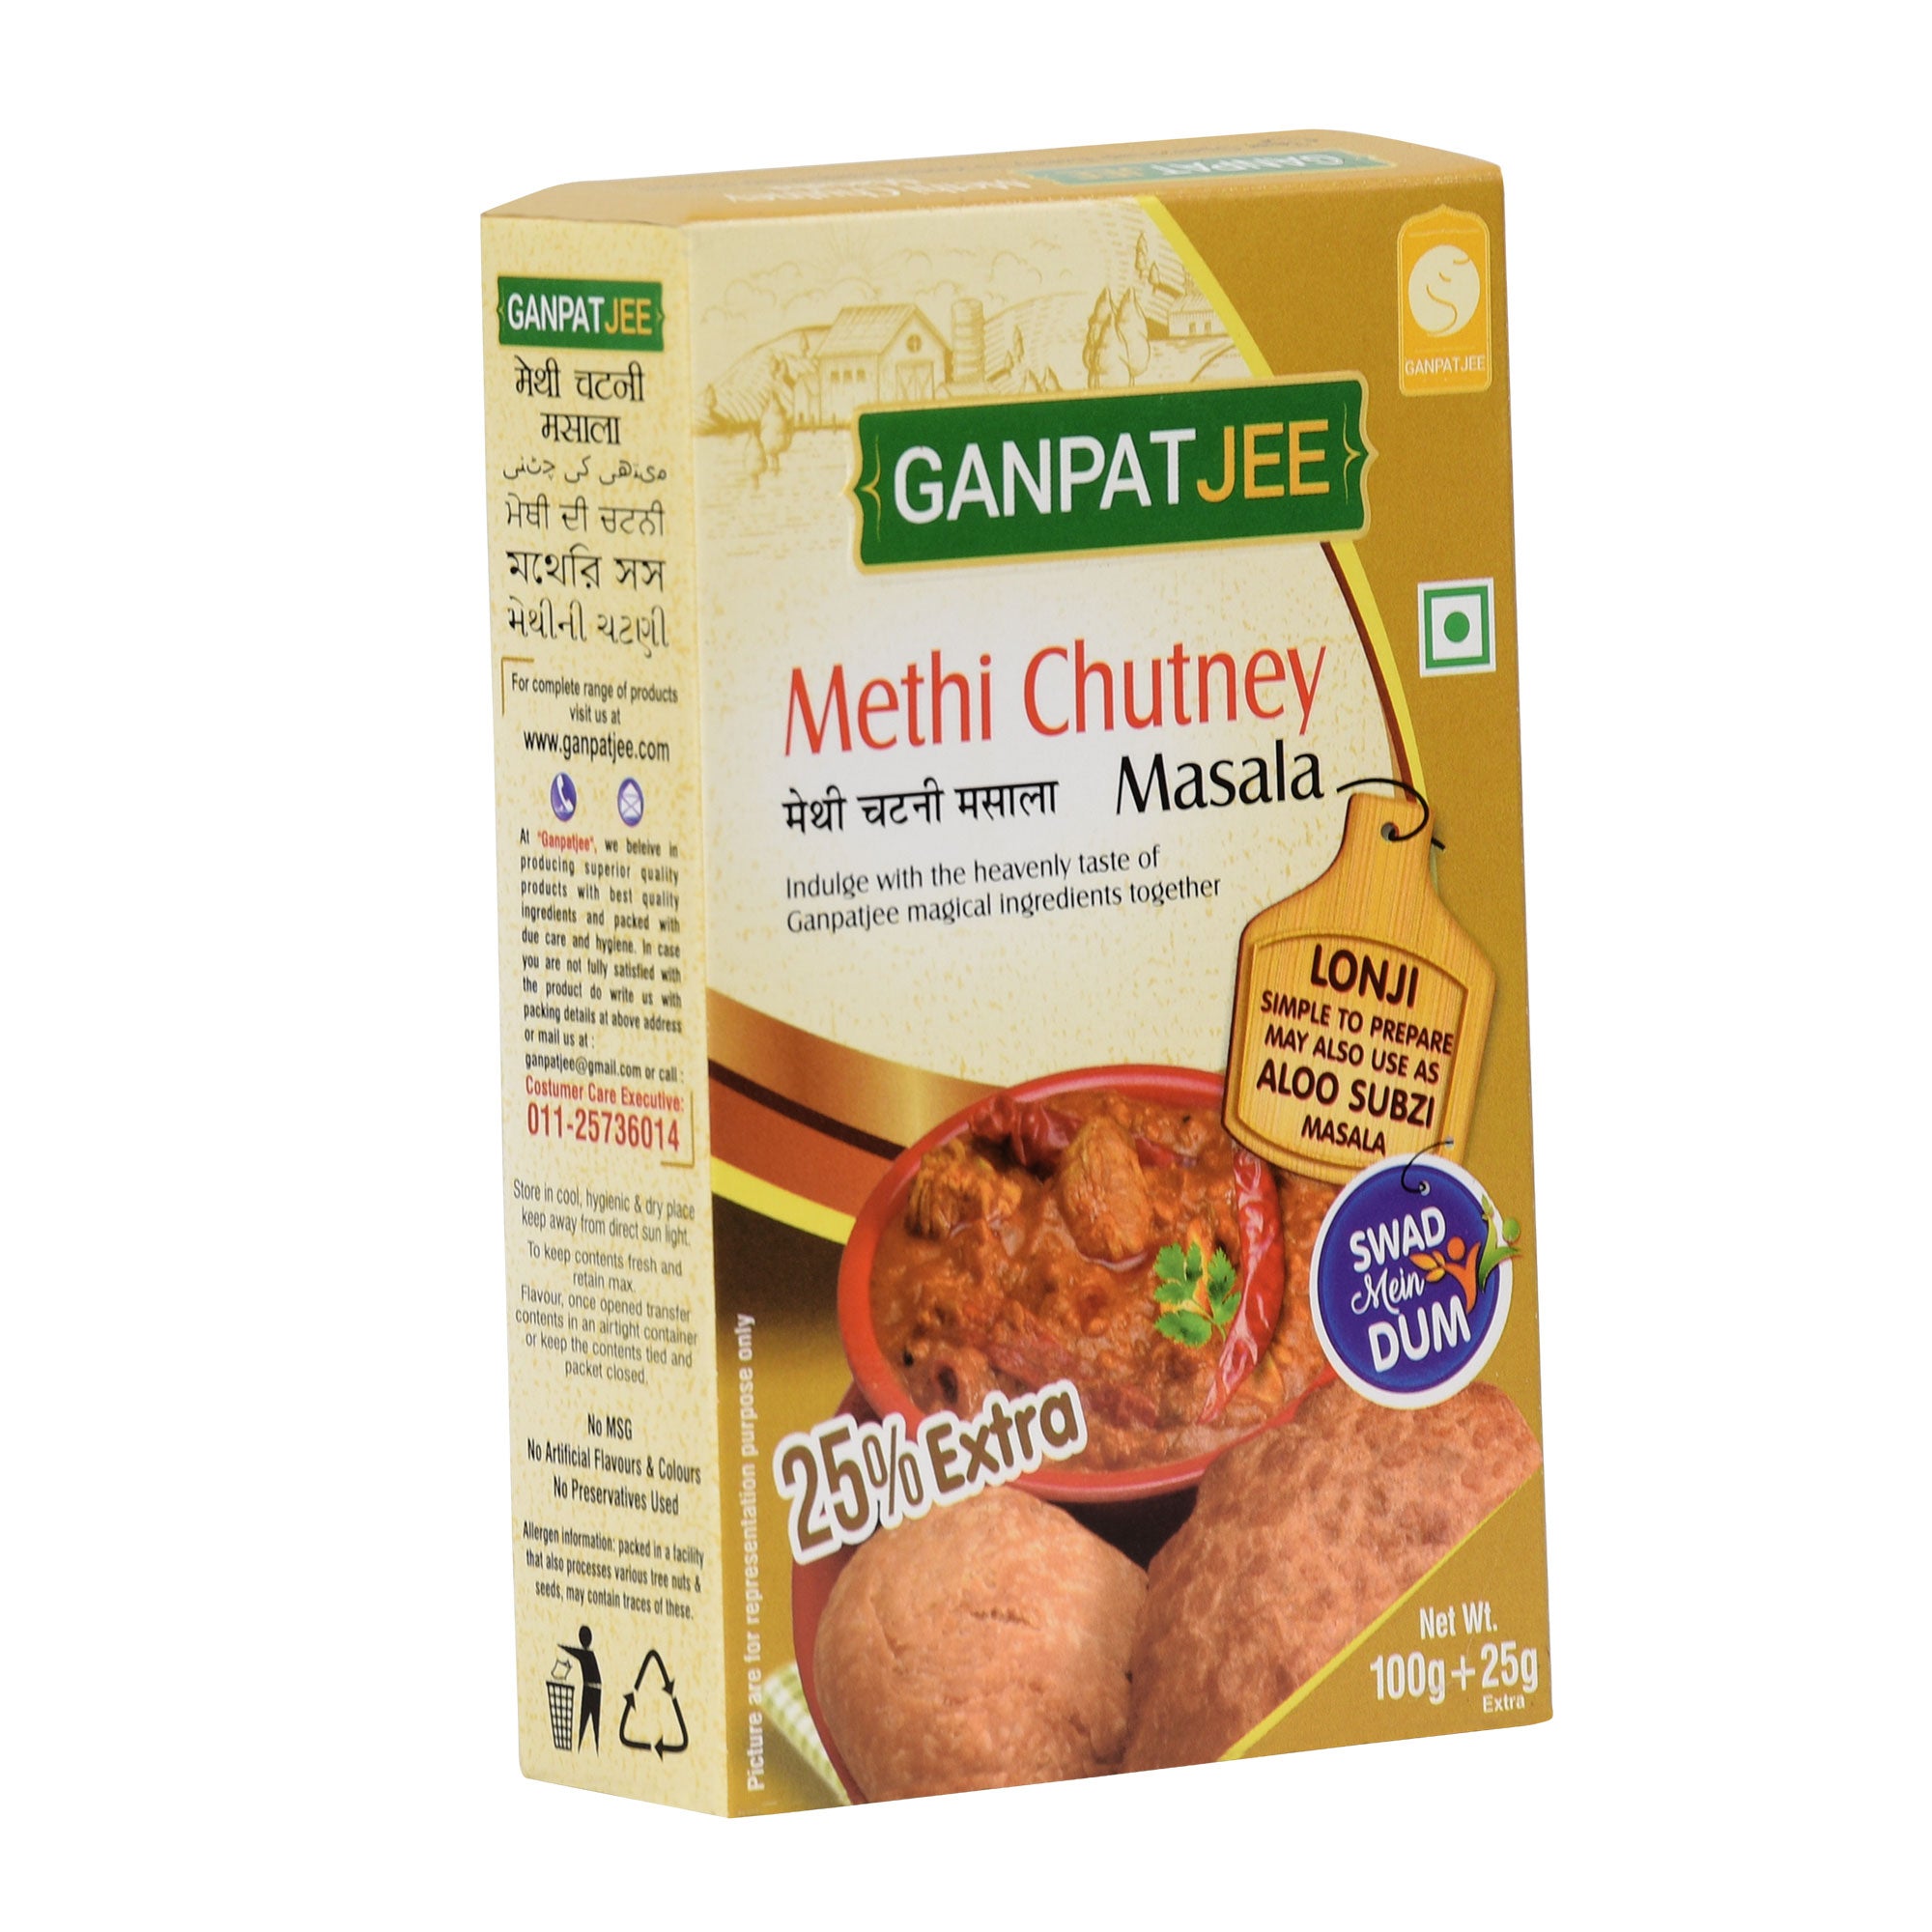 Ganpatjee Methi Chutney Masala 125g